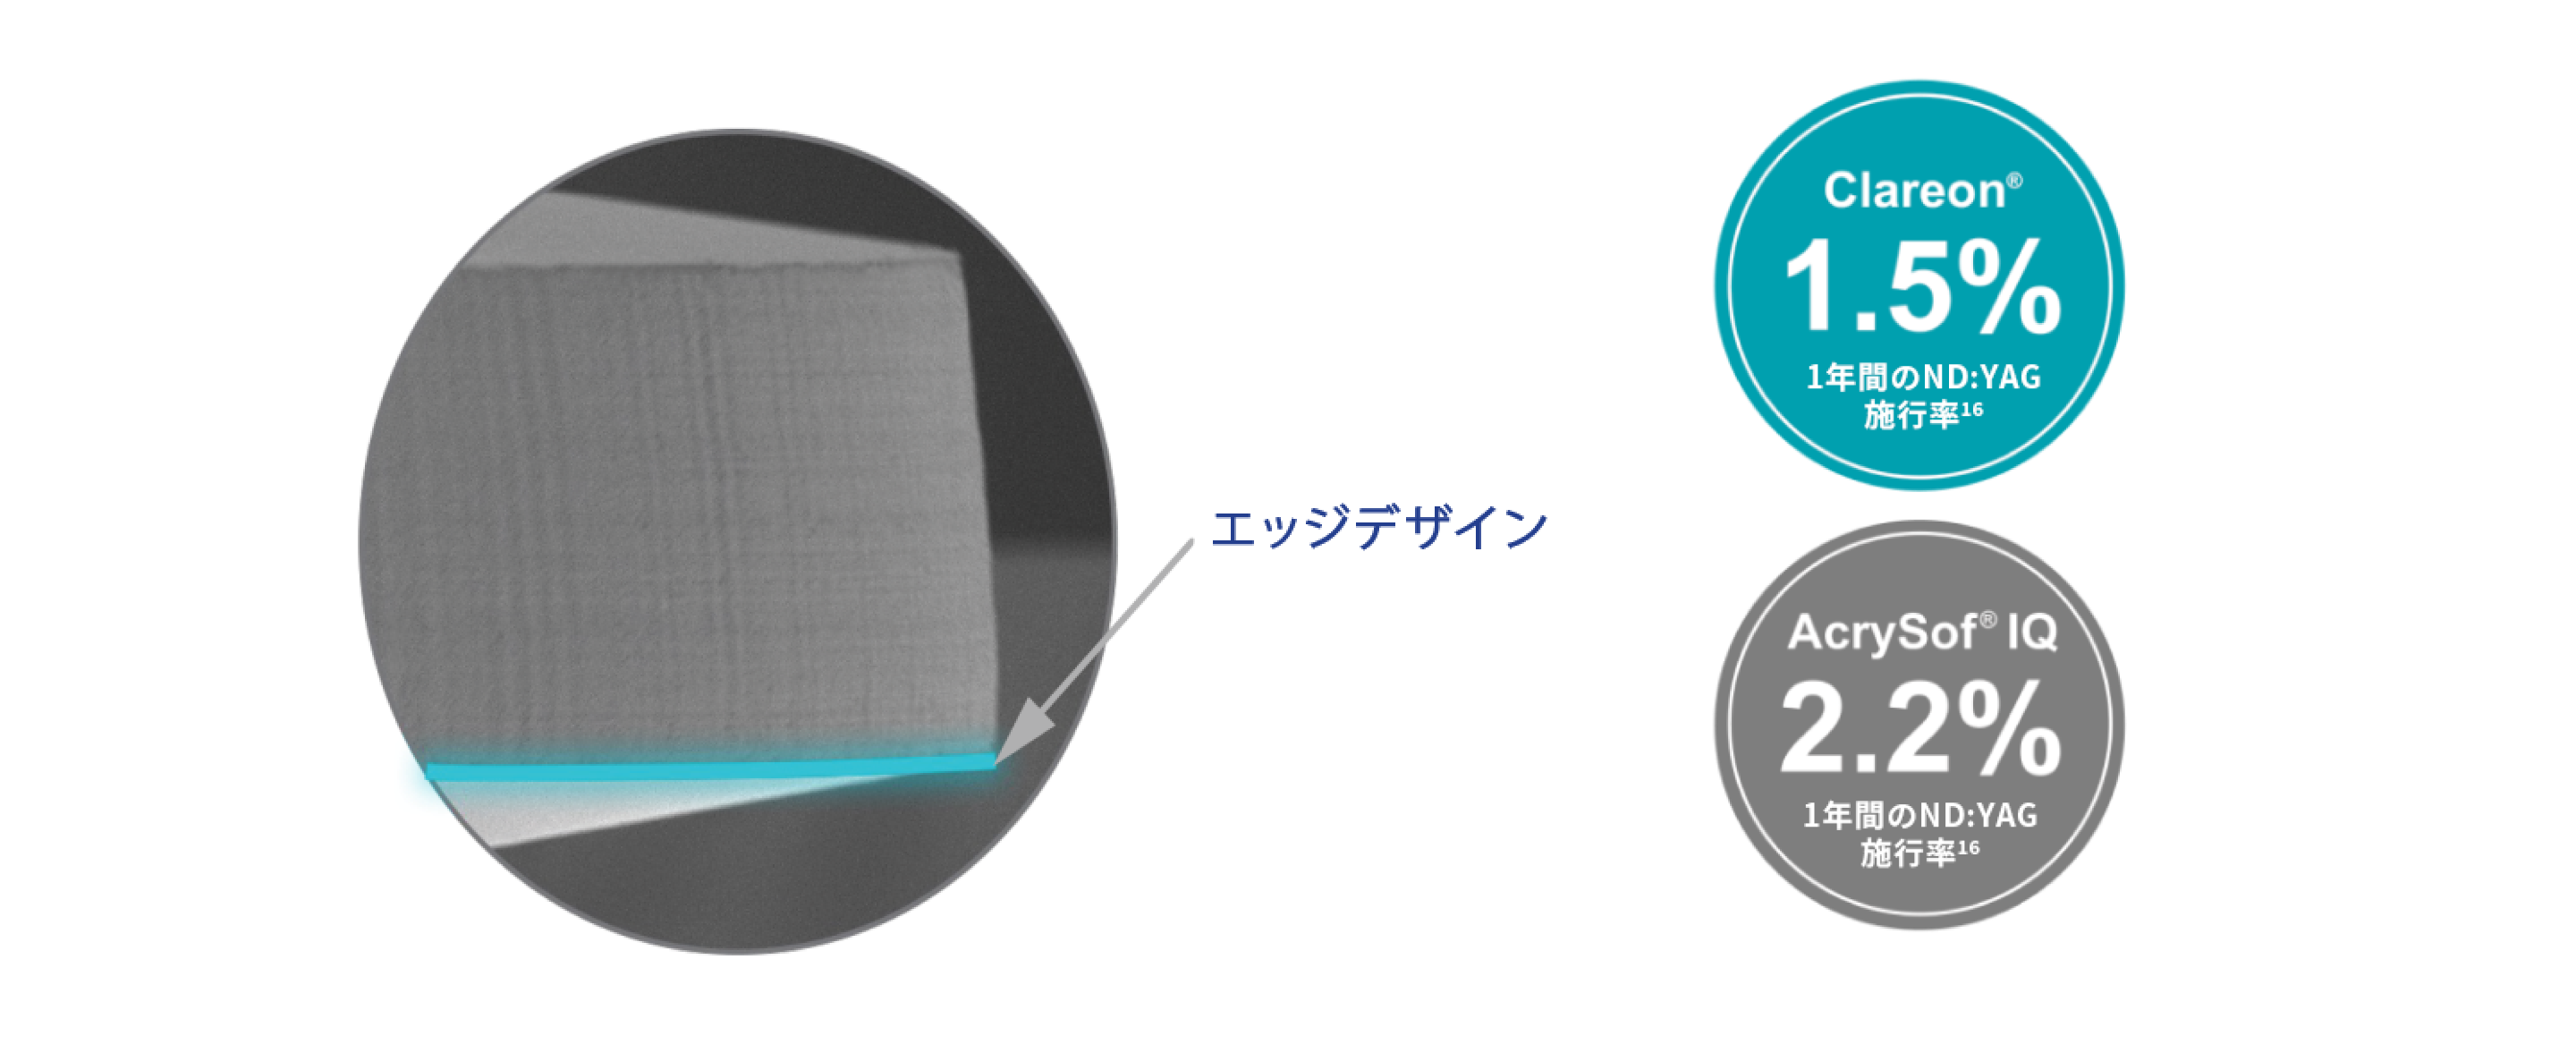 Clareon 眼内レンズの顕微鏡像の円形のビジュアルで、青緑色の線が連続した後方バリアを強調している。 2つの円形の吹き出しも表示されている。青緑色の背景の最初の吹き出しには、Clareon 眼内レンズの1年間のND:YAG施行率が1.5％であることが記載されている。2つ目の吹き出しのグレーの背景では、AcrySof IQ 眼内レンズは1年間のND:YAG施工率は2.2%である。